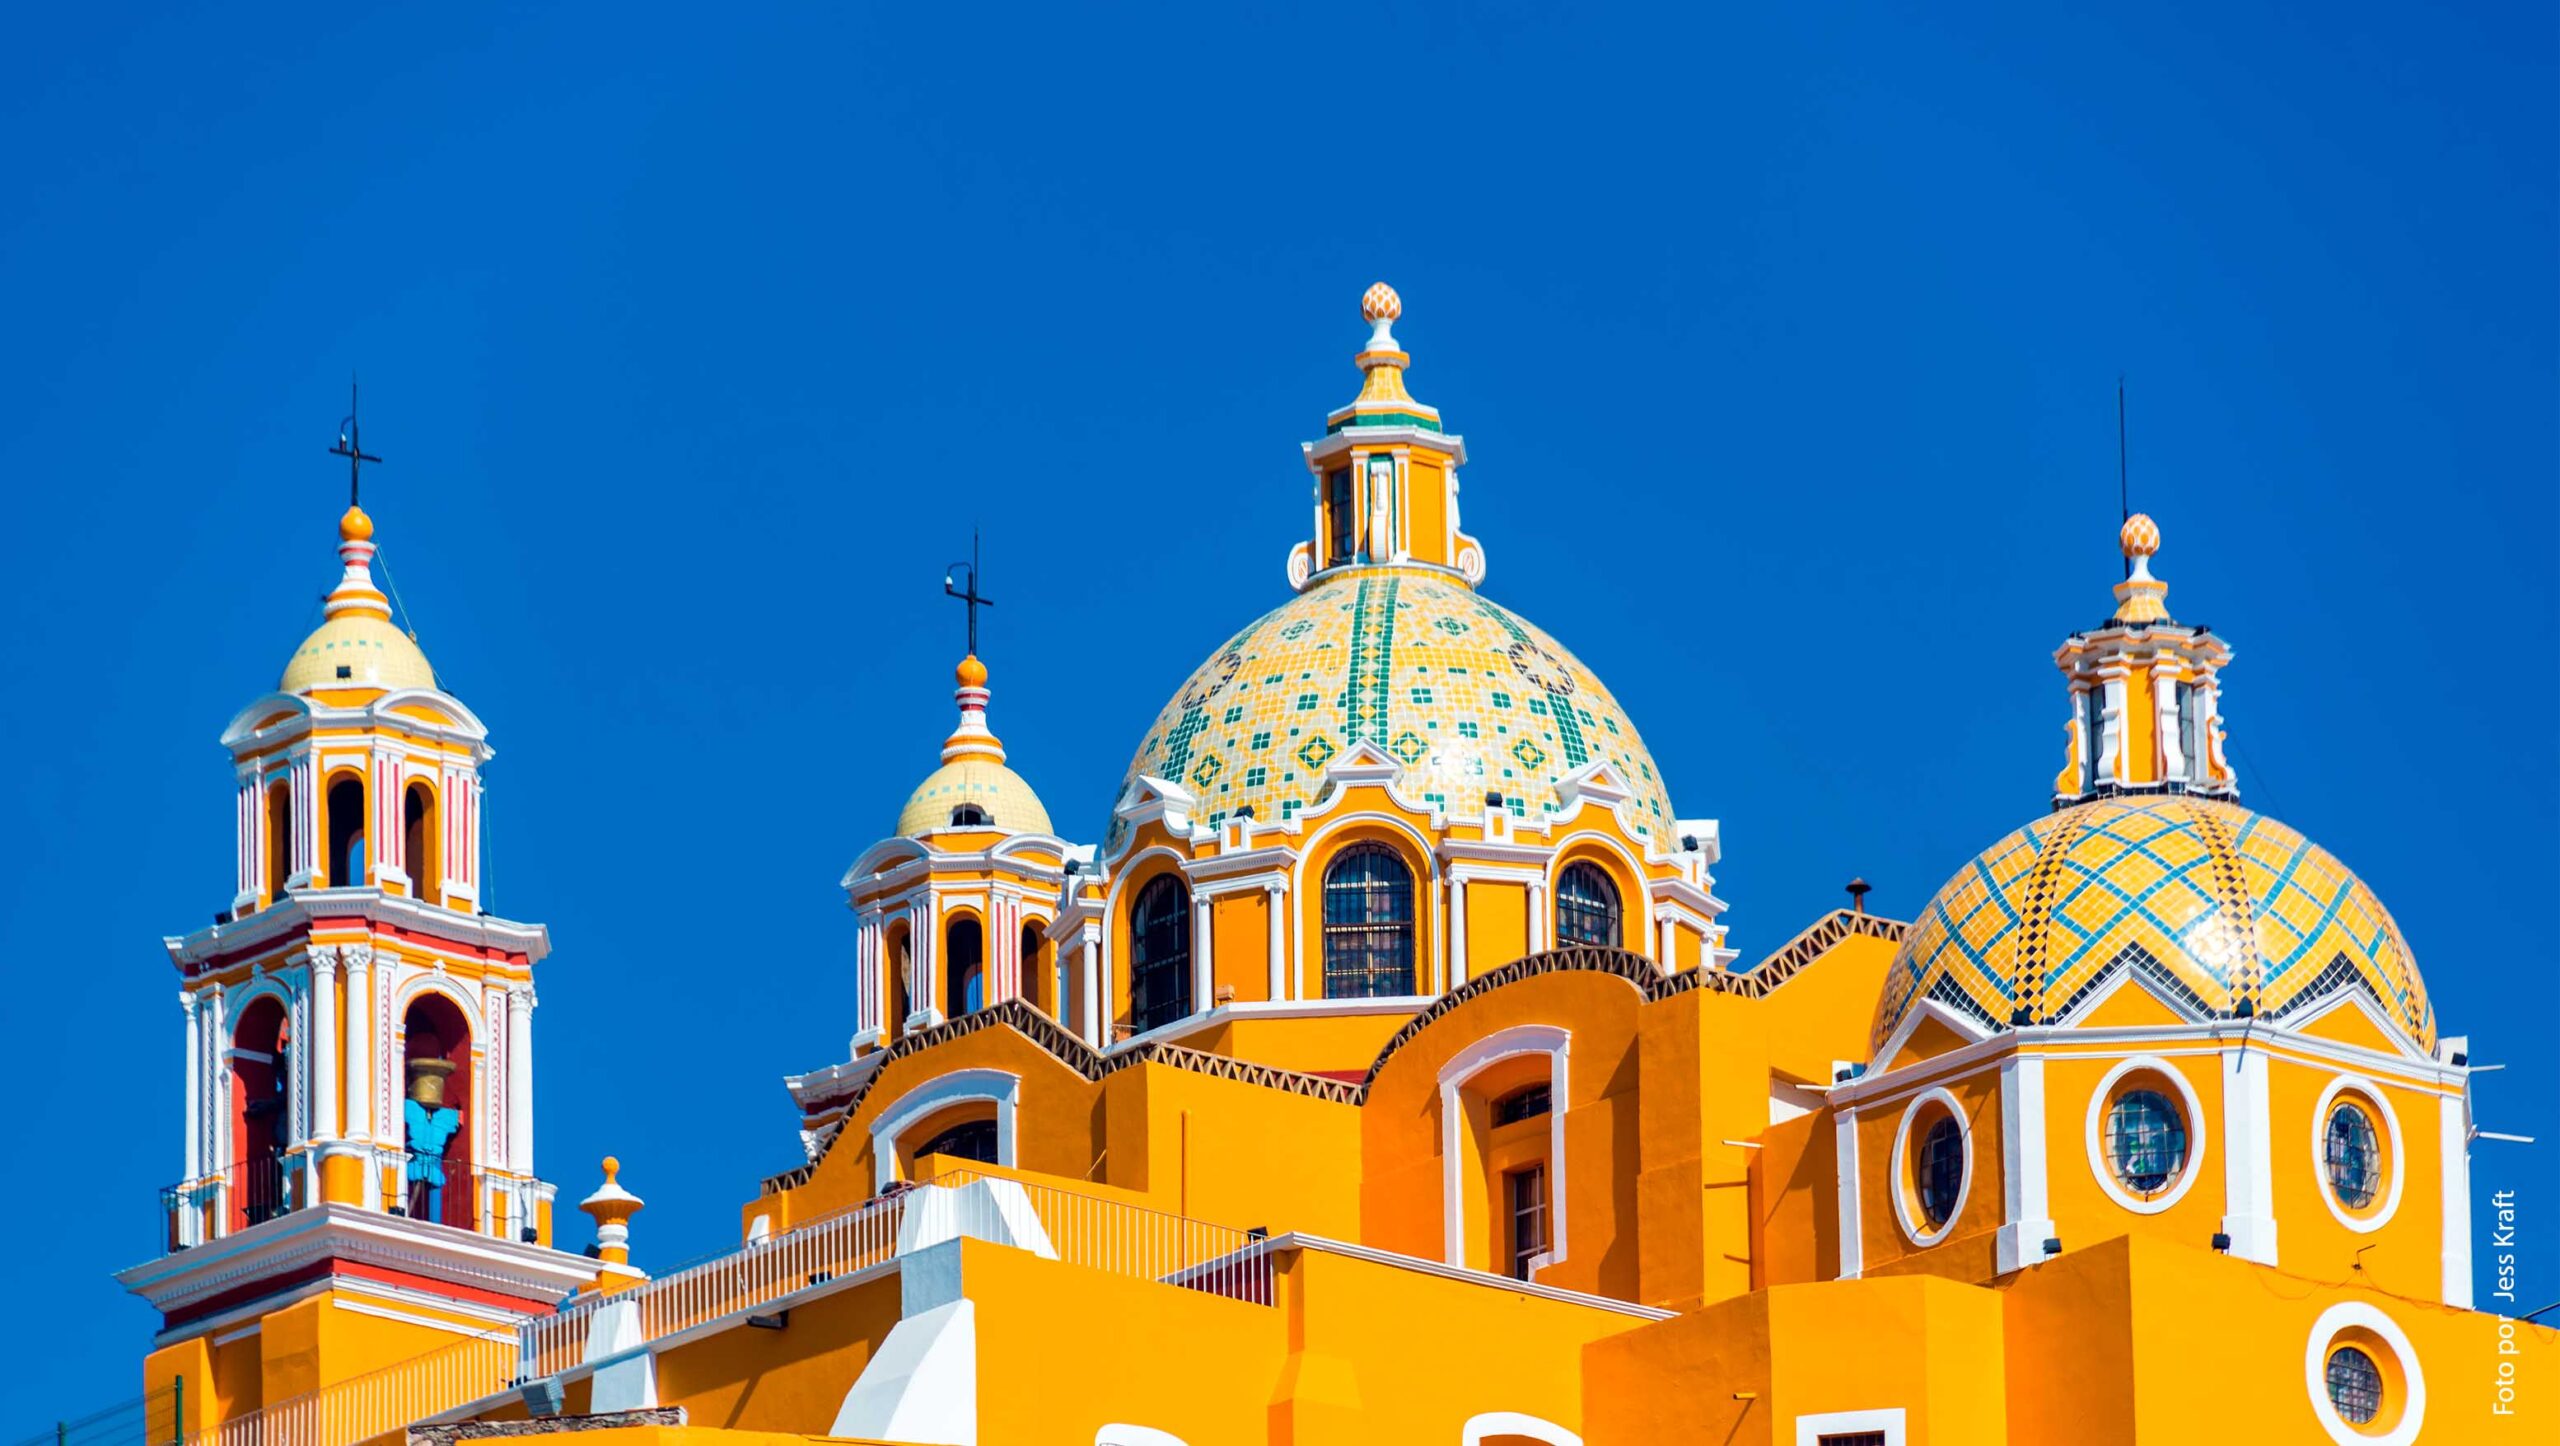 Descubre los encantos barrocos de Puebla – Ferrara Porter